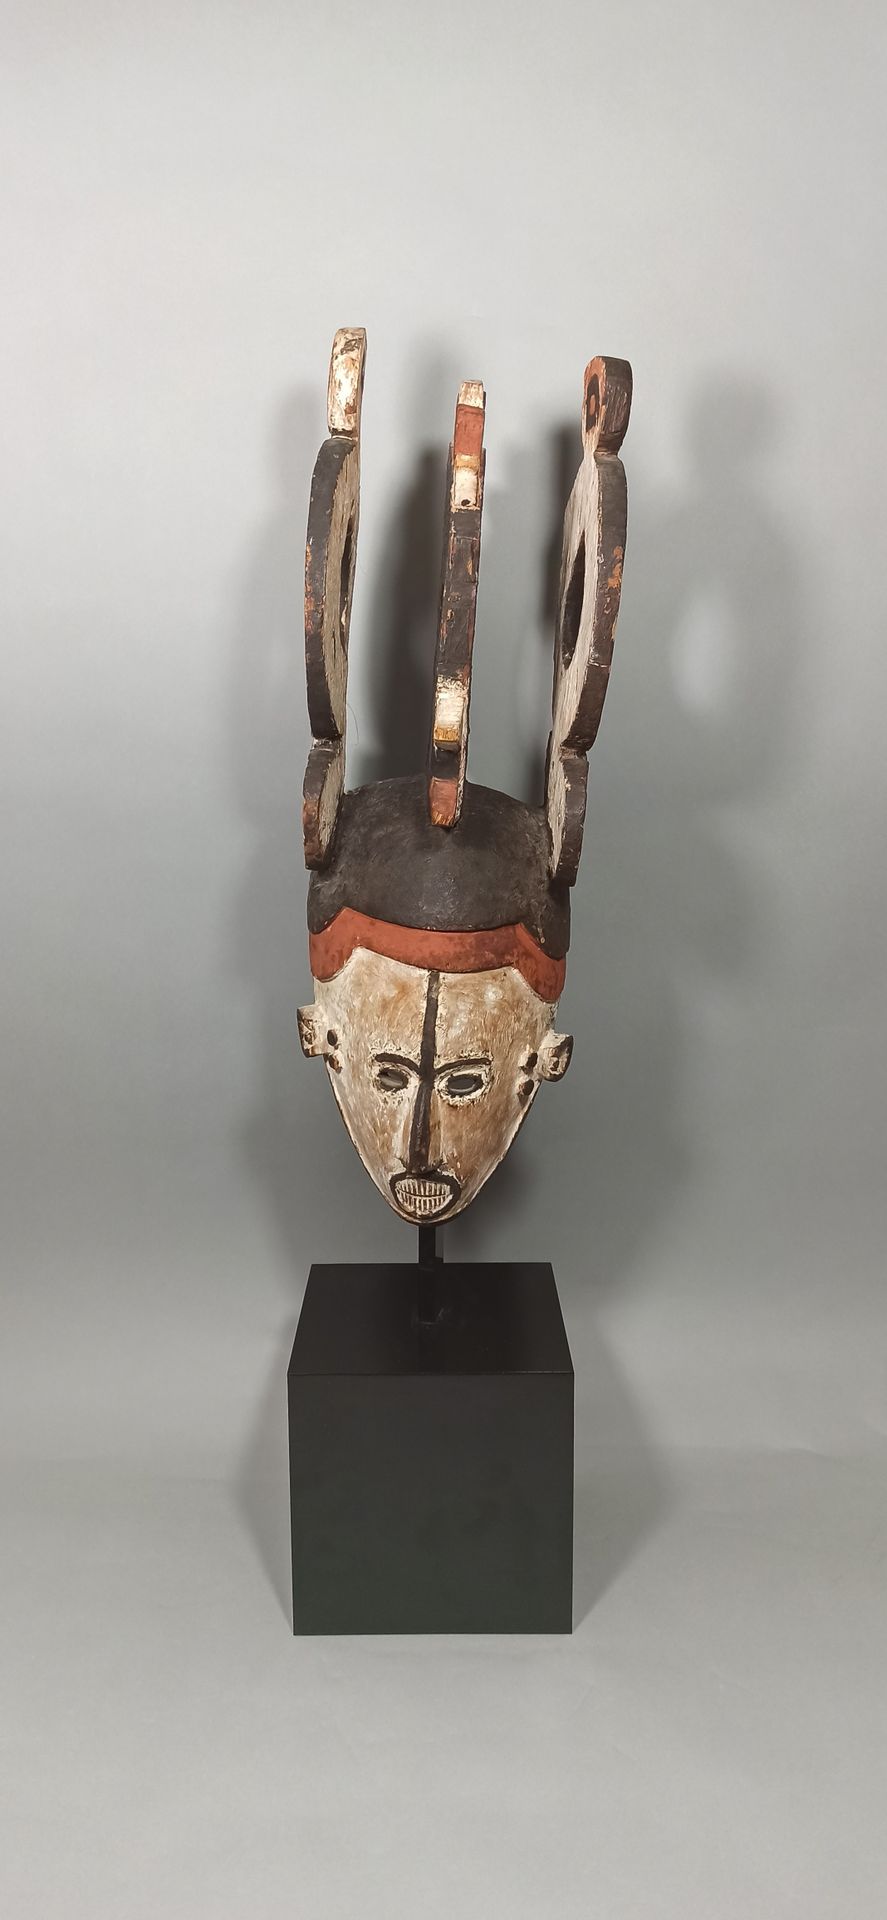 Null Grande maschera Igbo "mmwo", Nigeria.

Altezza: 60 cm